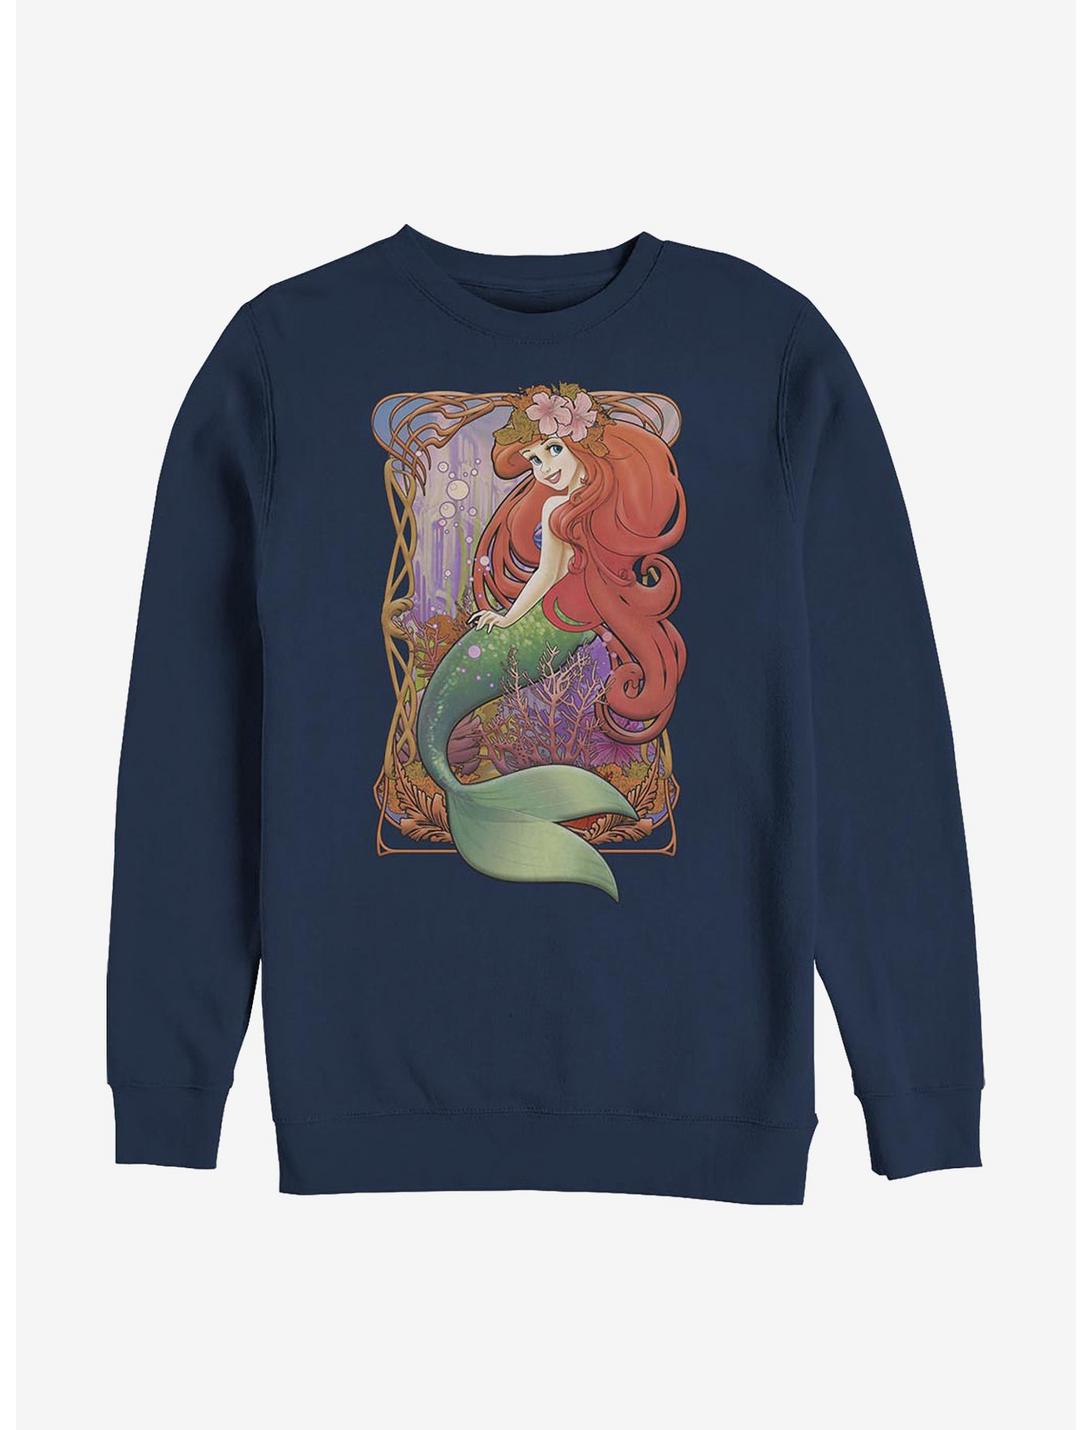 Plus Size Disney The Little Mermaid Art Nouveau Ariel Sweatshirt, NAVY, hi-res